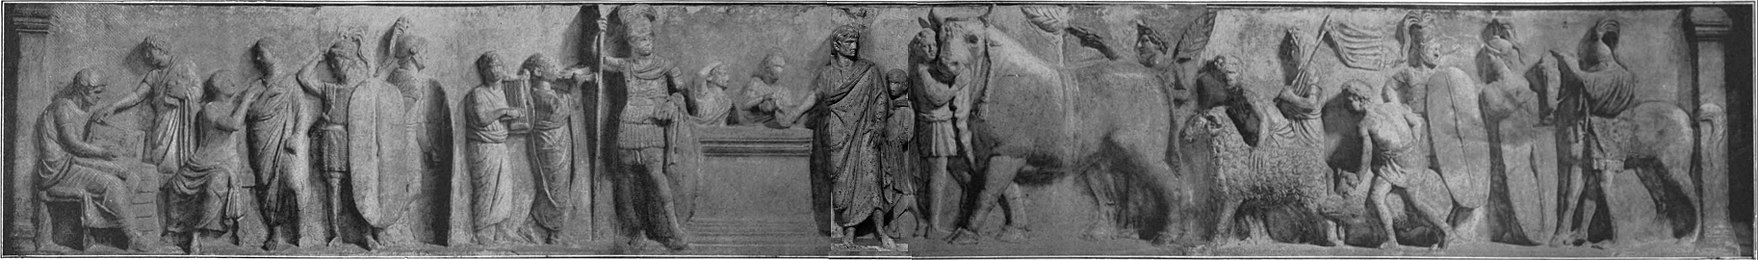 EB1911 Roman Art - Altar of Domitius Ahenobarbus.jpg